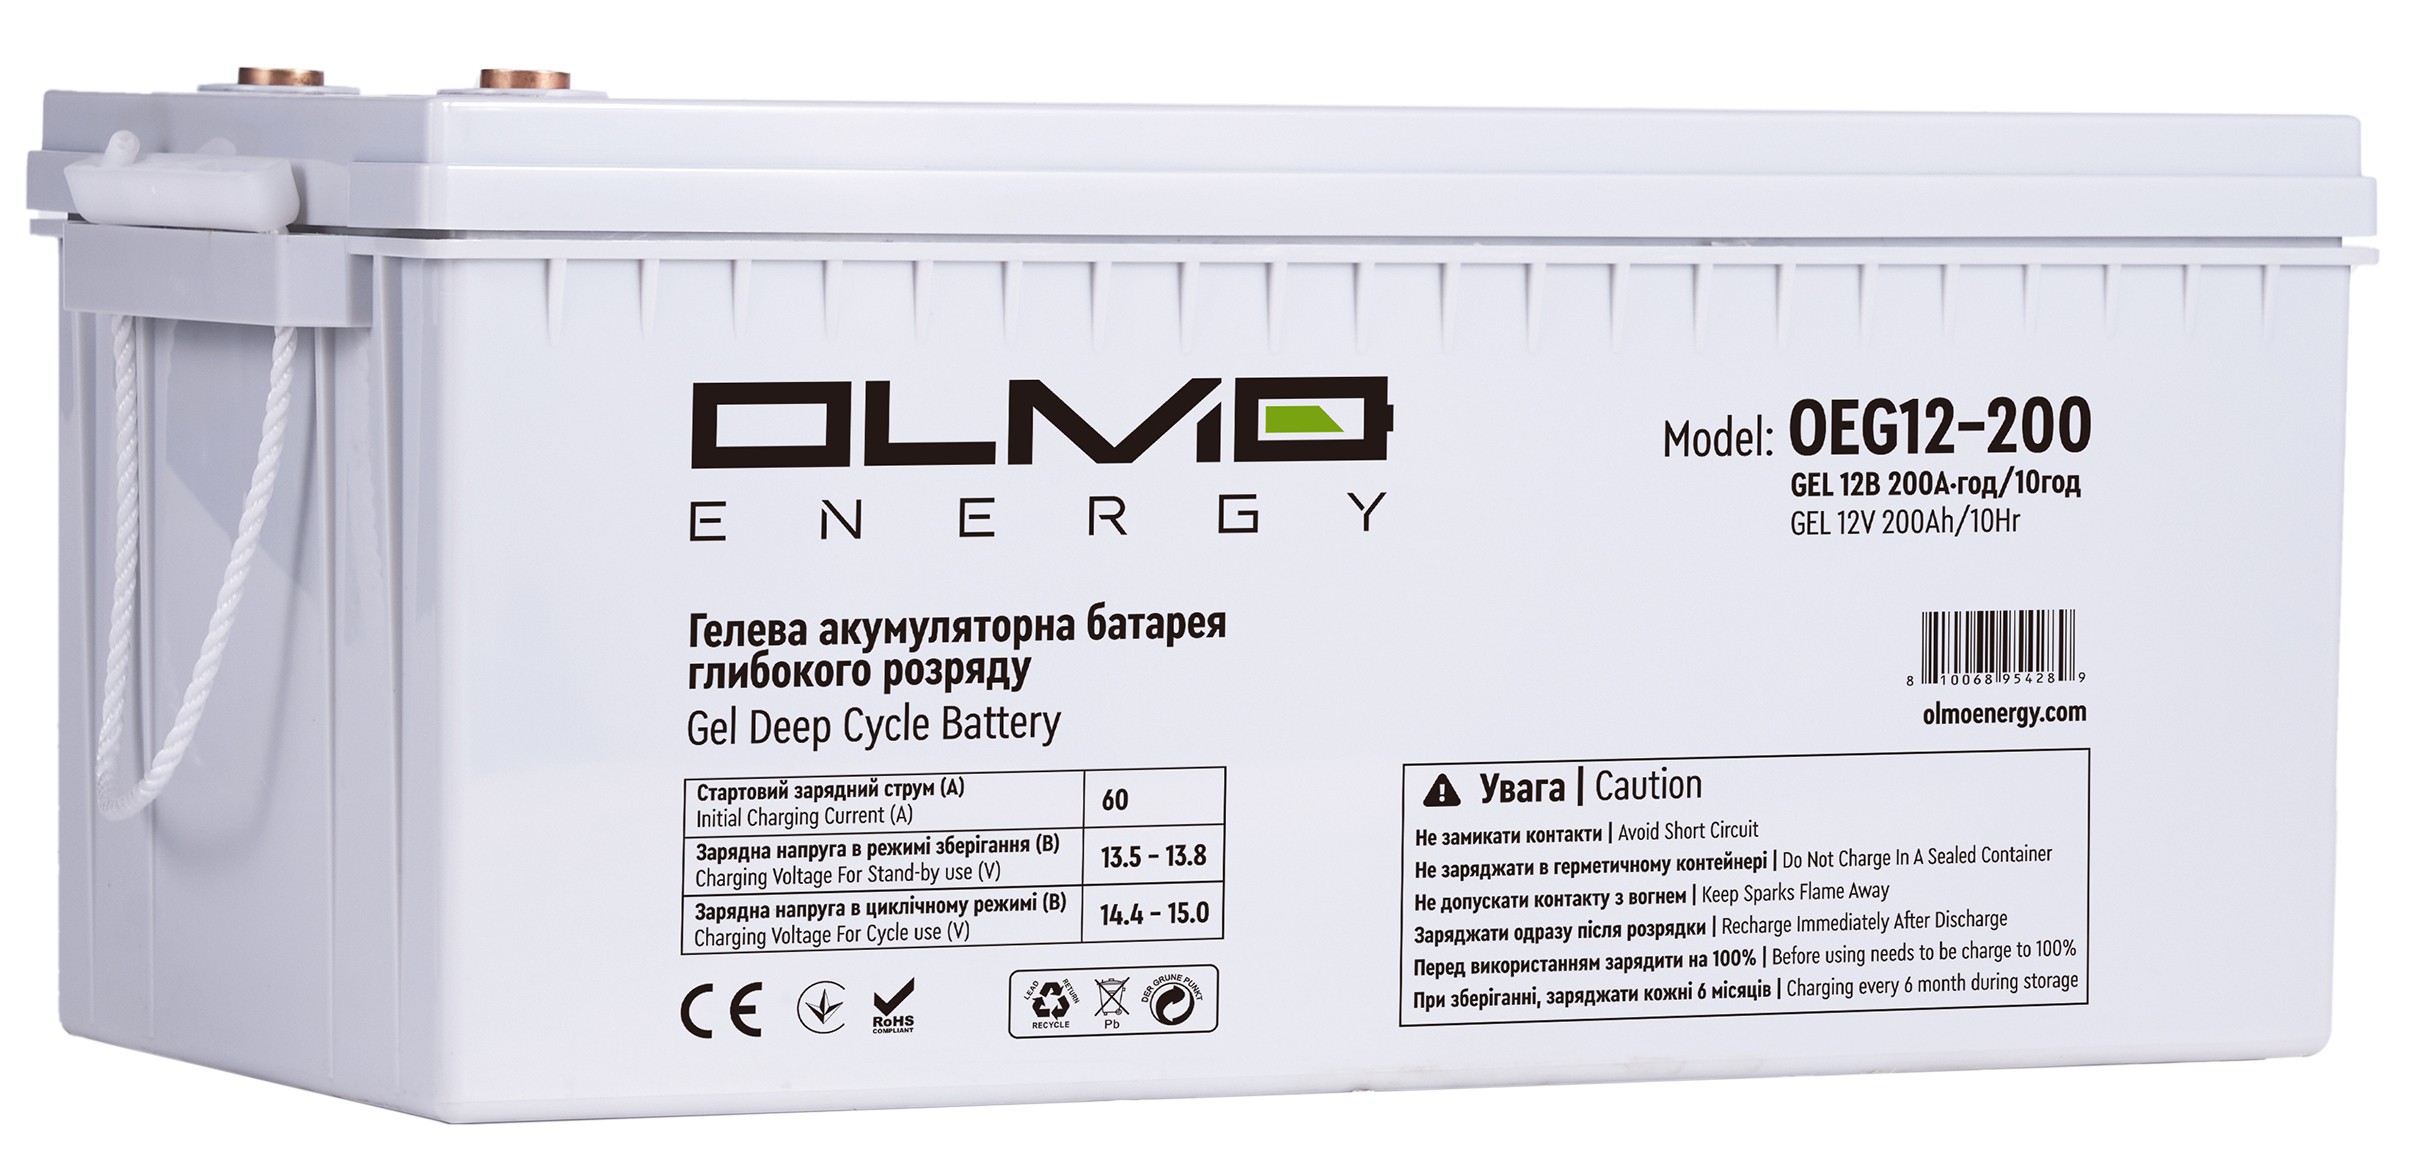 Аккумуляторная батарея OLMO Energy OEG12-200 в интернет-магазине, главное фото